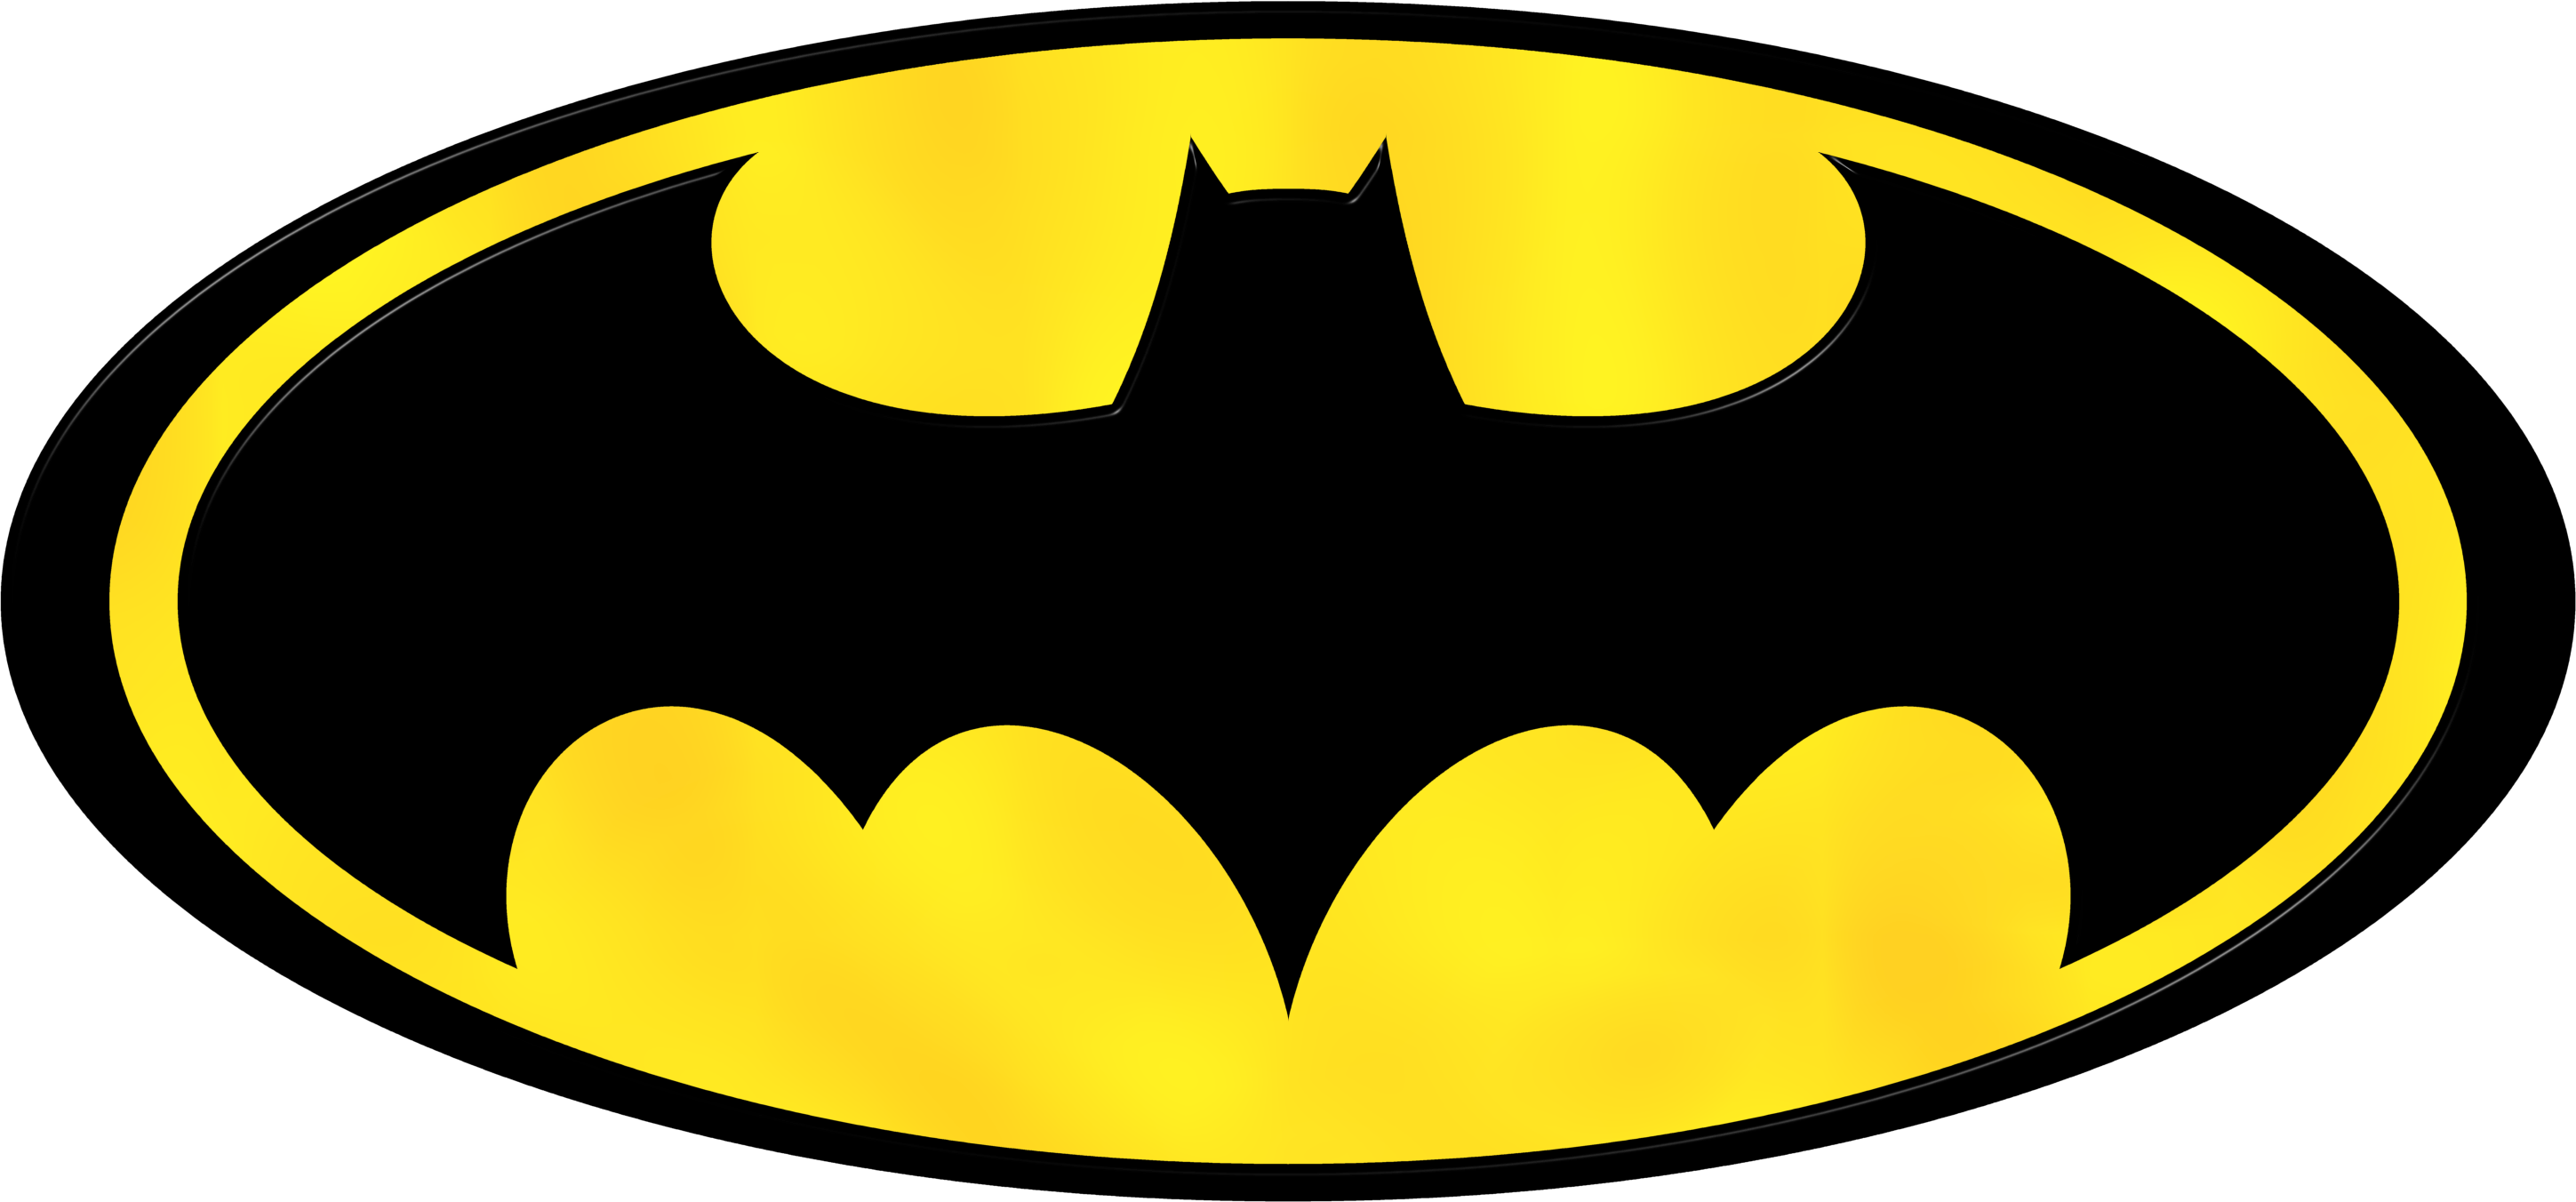 Batman Symbol Logo - Free Pics Of Batman Symbol, Download Free Clip Art, Free Clip Art on ...